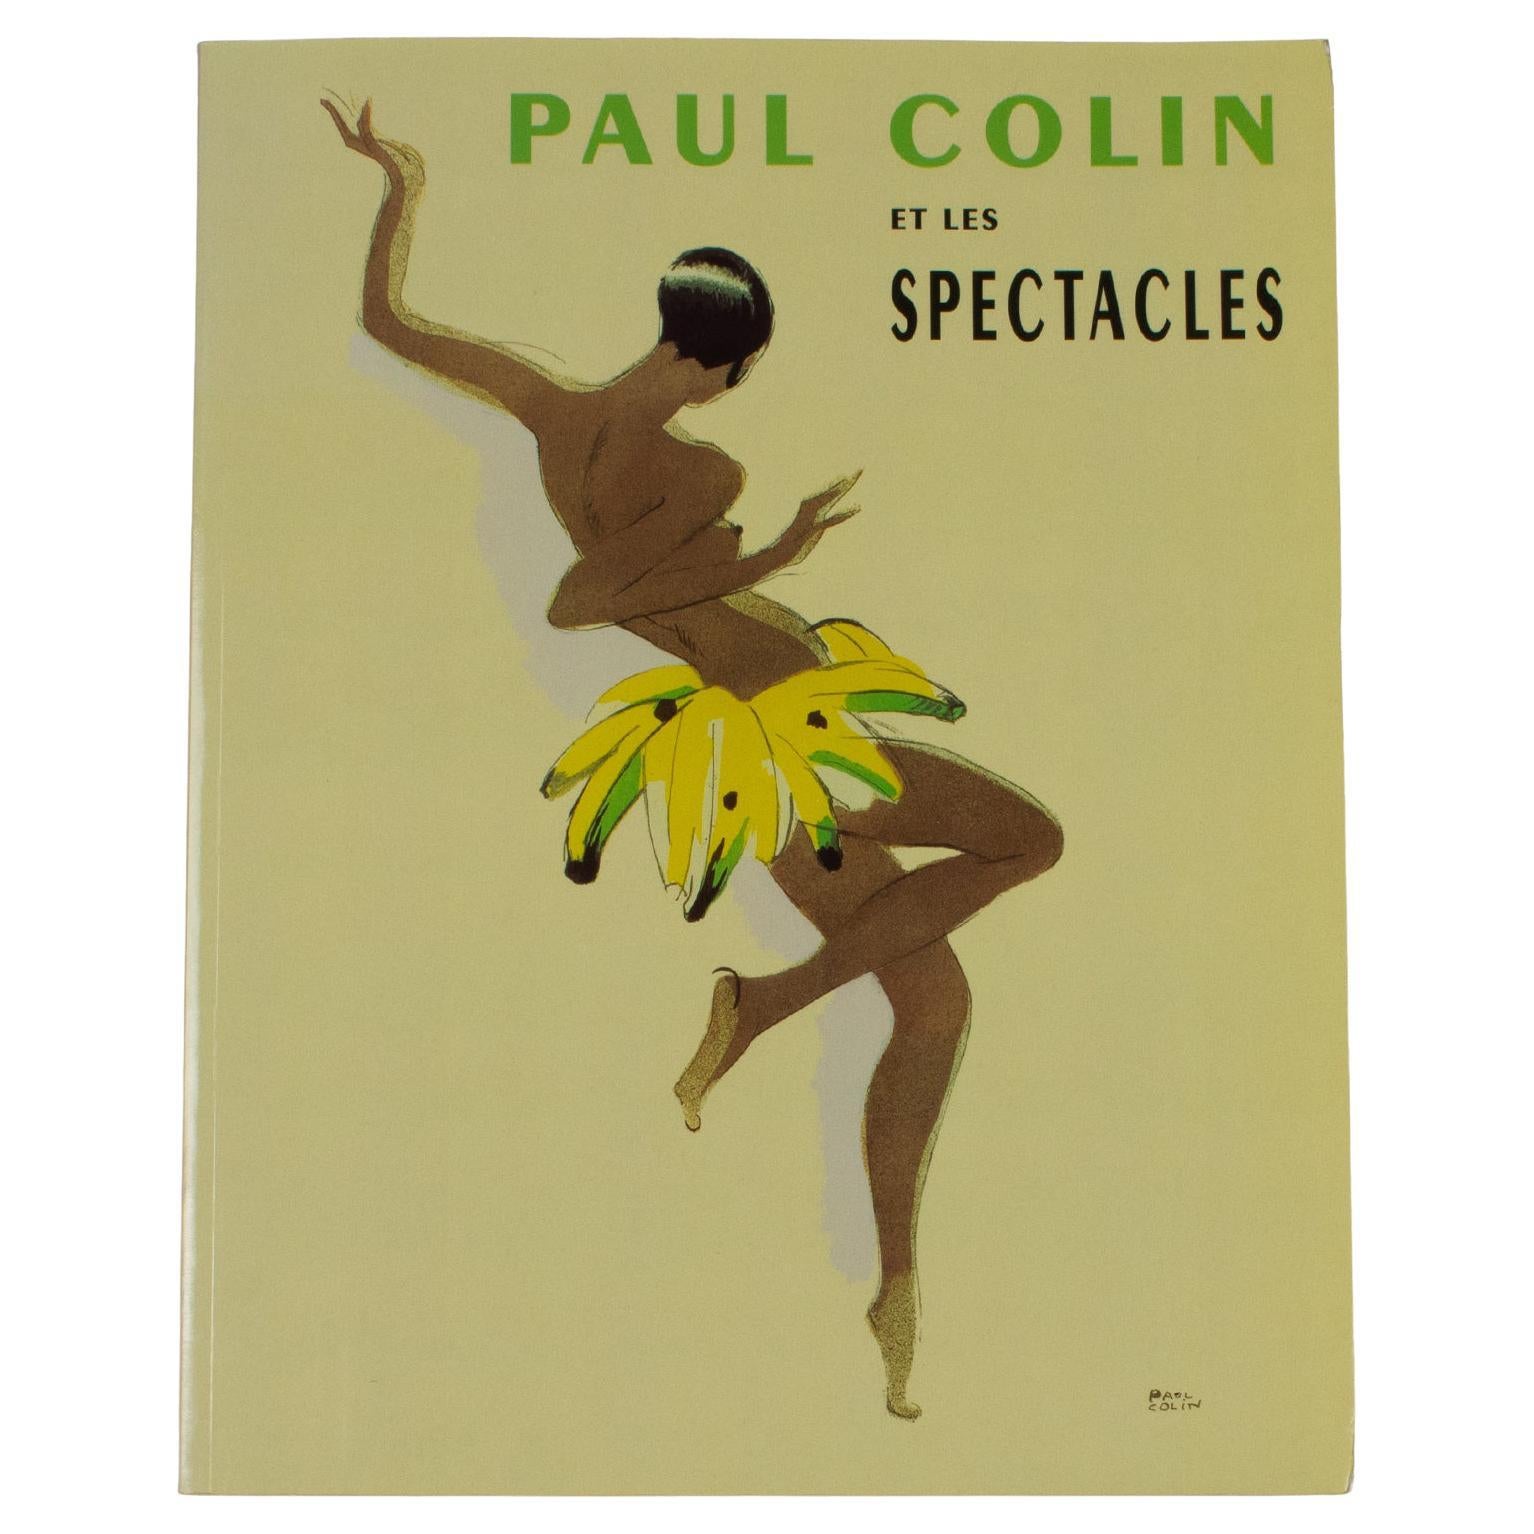 Paul Colin et les Spectacles Book by Musée des Beaux-Arts de Nancy, France 1994